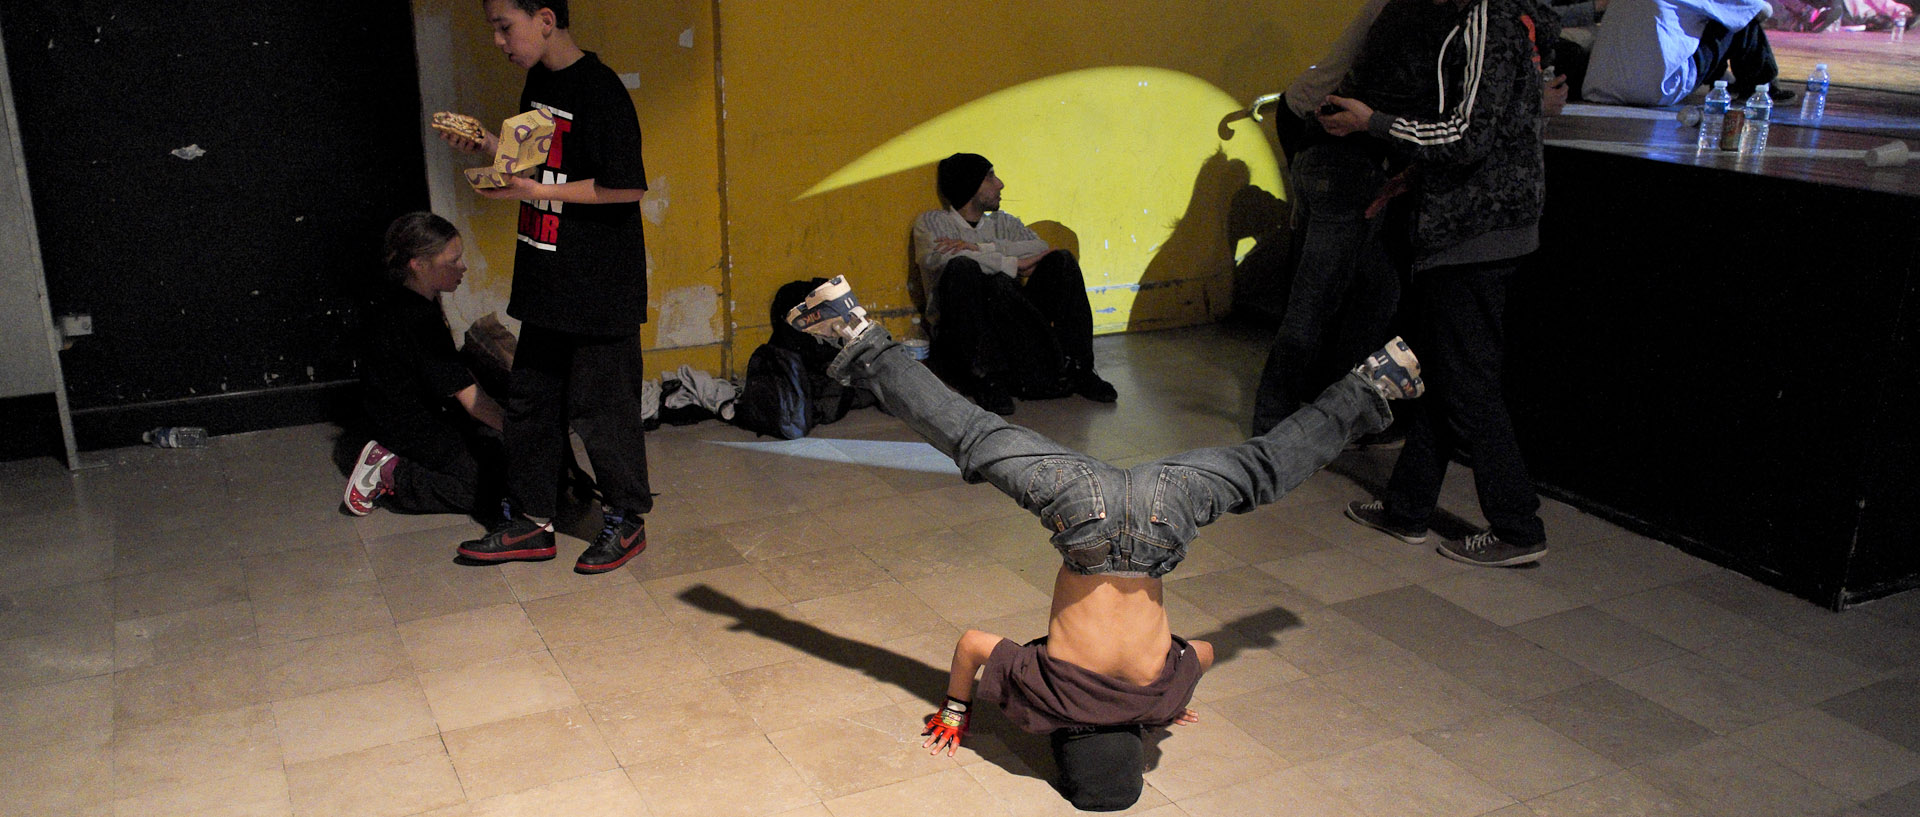 Jeune garçon dansant au pied de la scène, pendant un battle de hip hop, salle Watremez , à Roubaix.